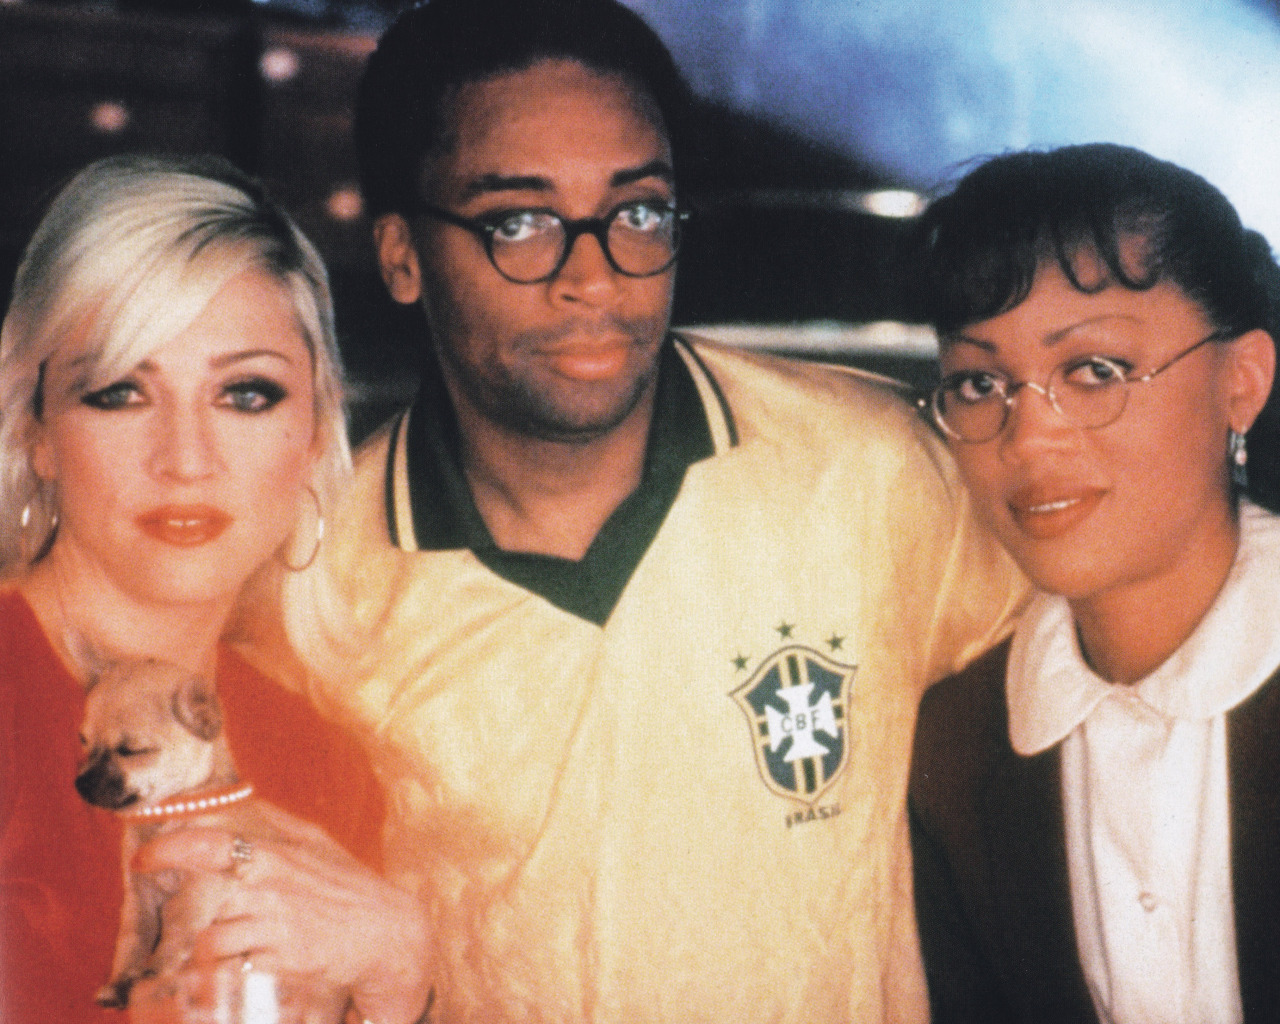  فیلم سینمایی Girl 6 با حضور Madonna، Theresa Randle و اسپایک لی